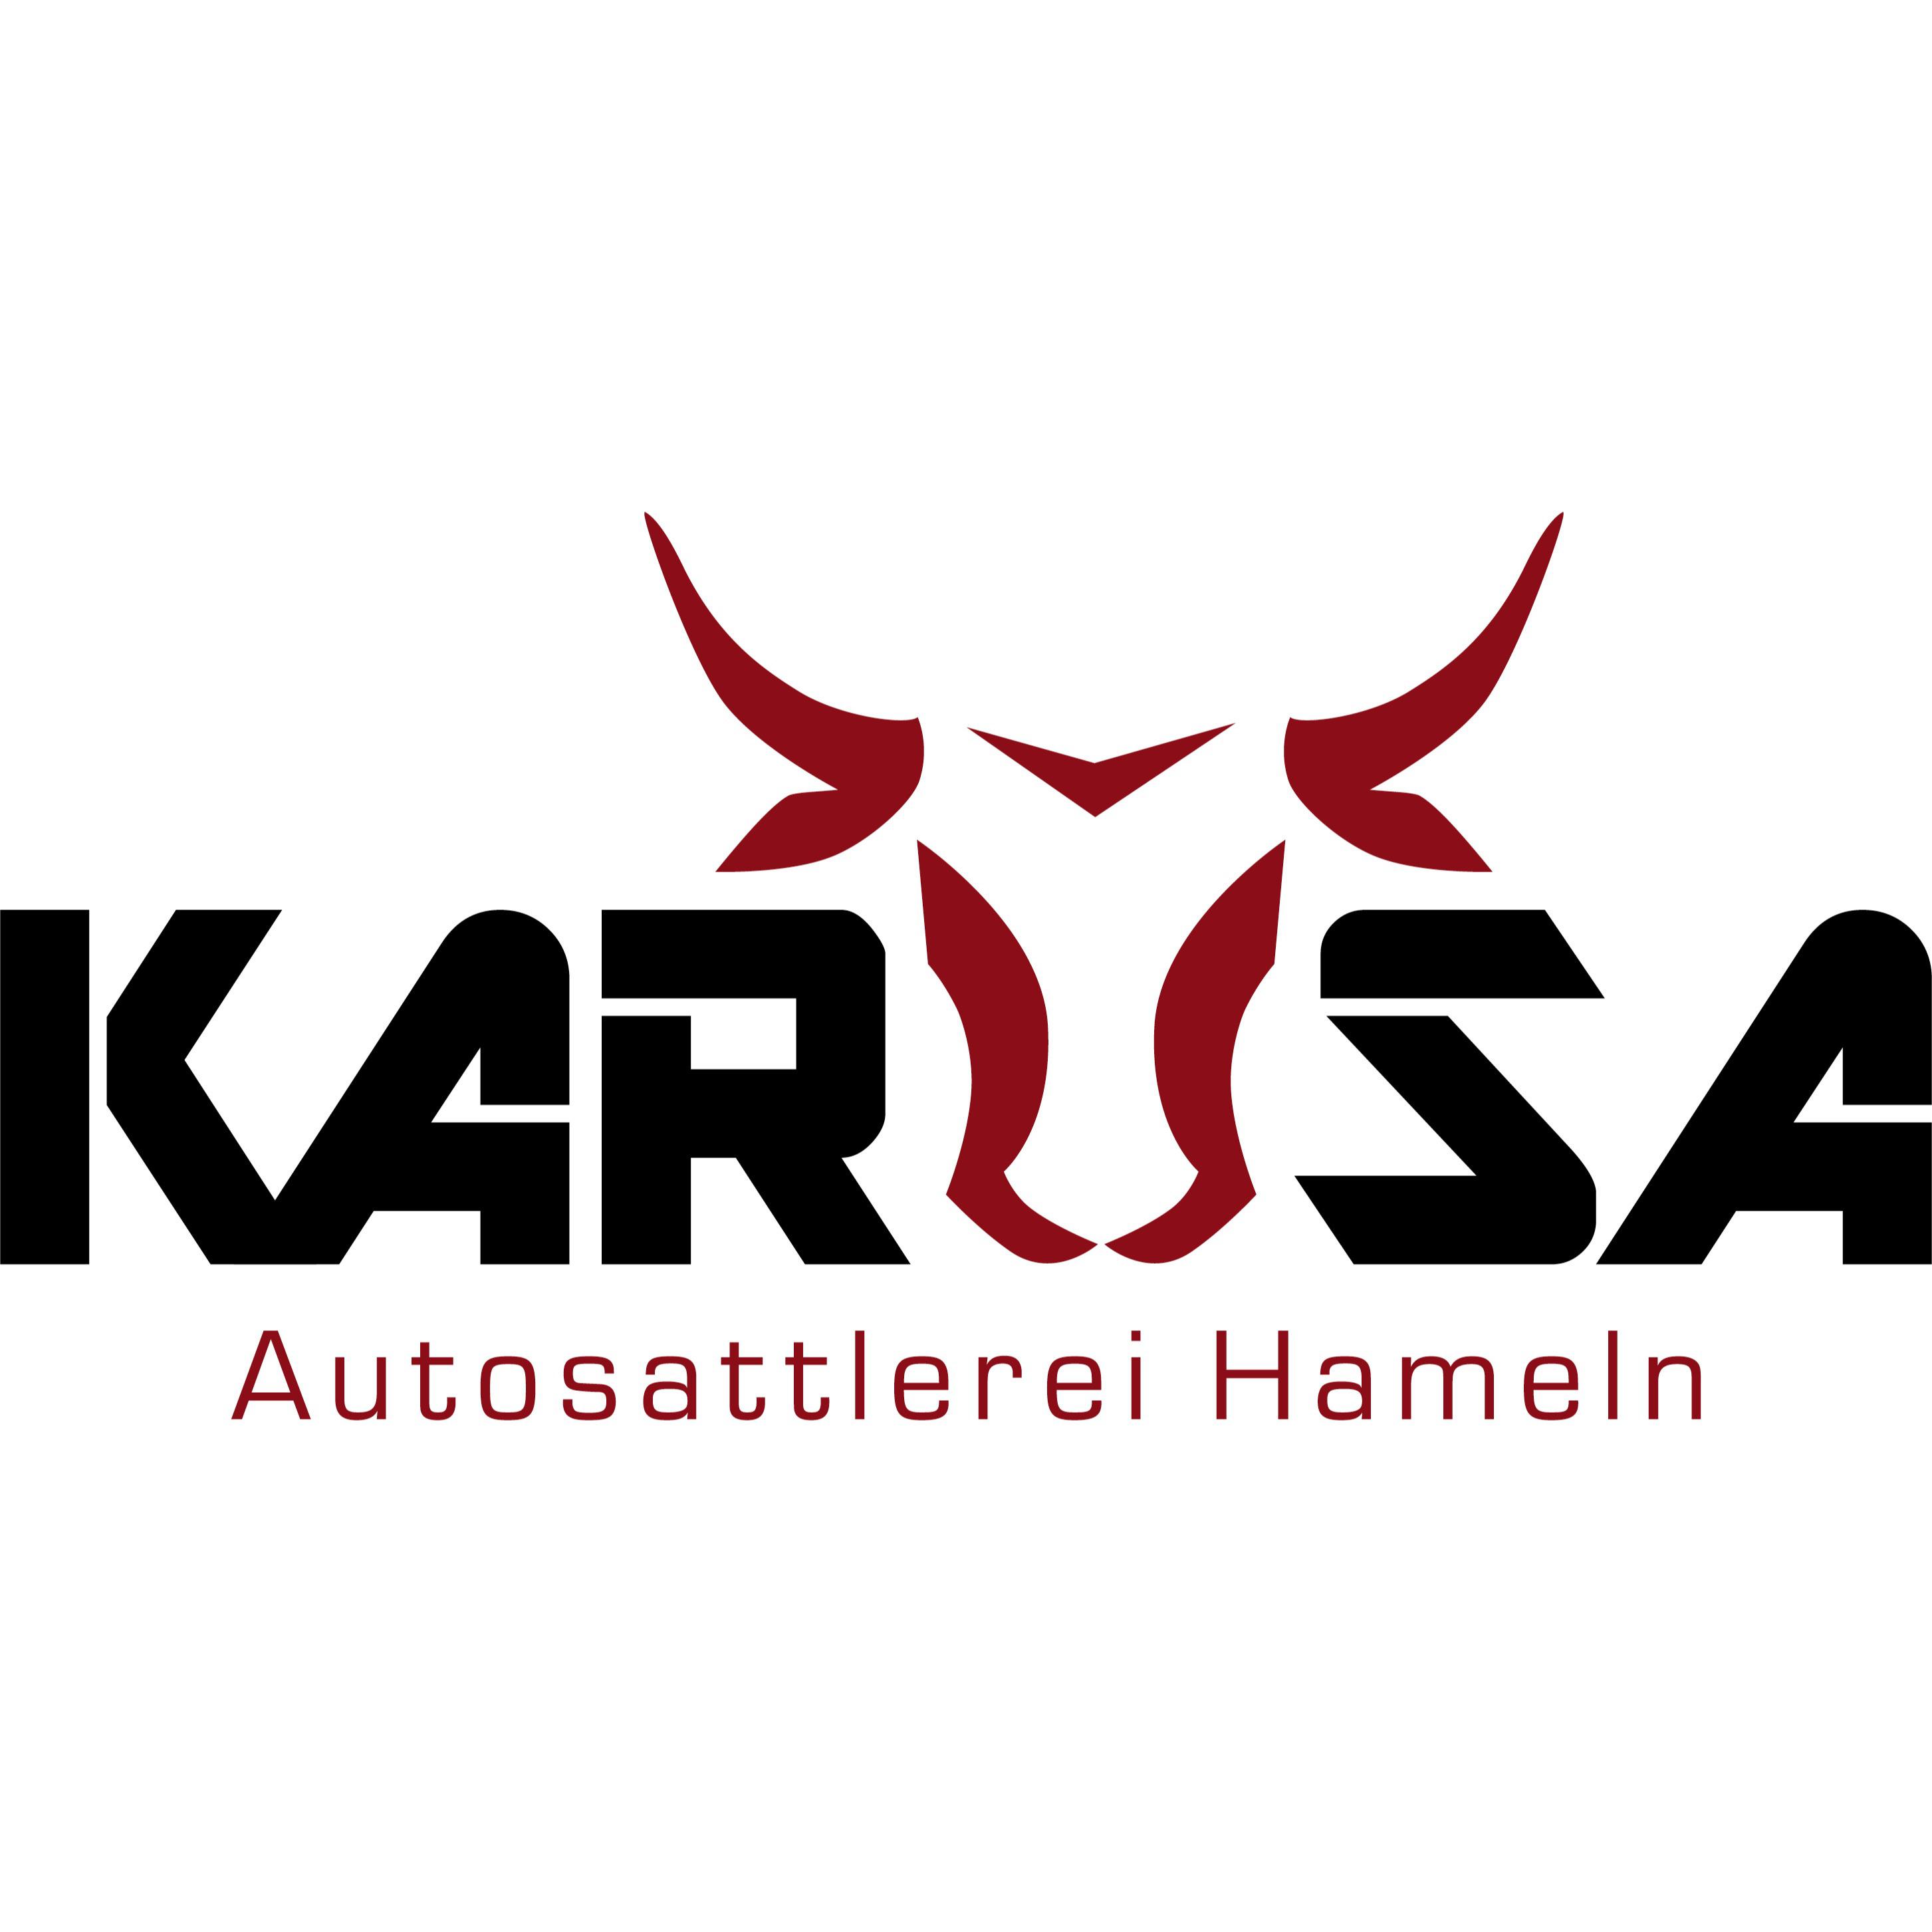 Autosattlerei KARUSA in Hameln - Logo